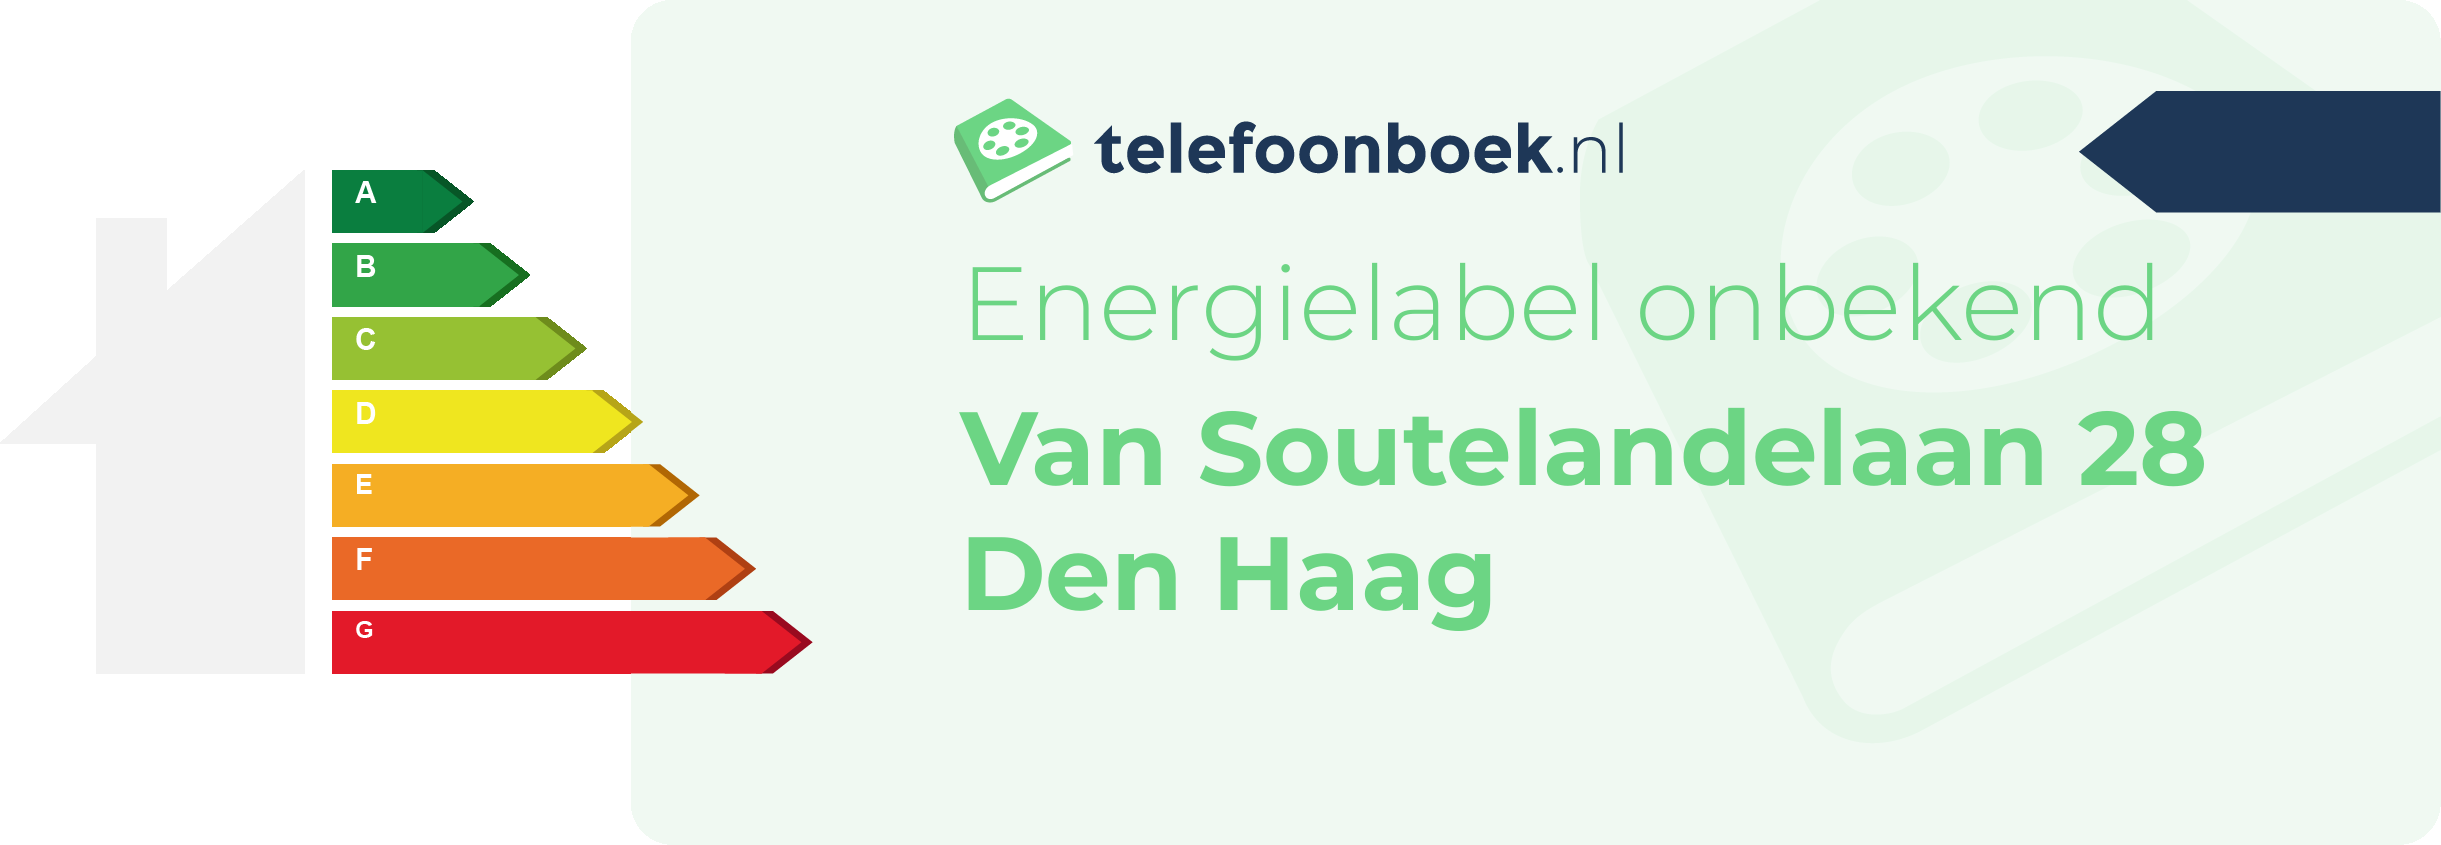 Energielabel Van Soutelandelaan 28 Den Haag